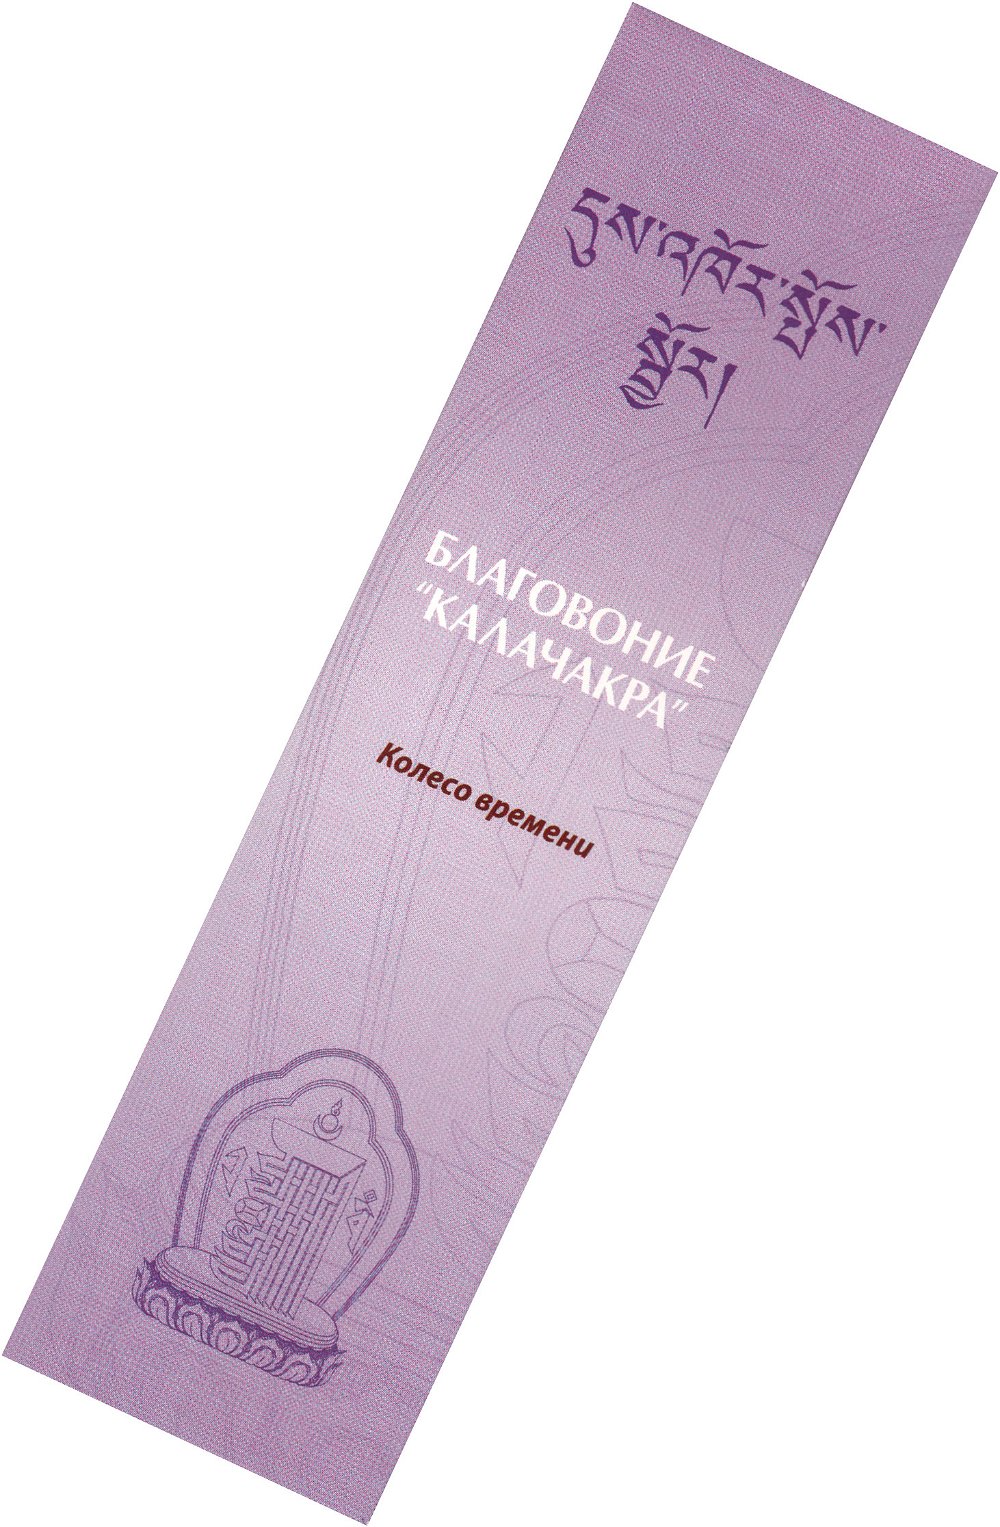 Благовоние Kalachakra Incense (Калачакра), 20 палочек по 14 см, 20, Калачакра